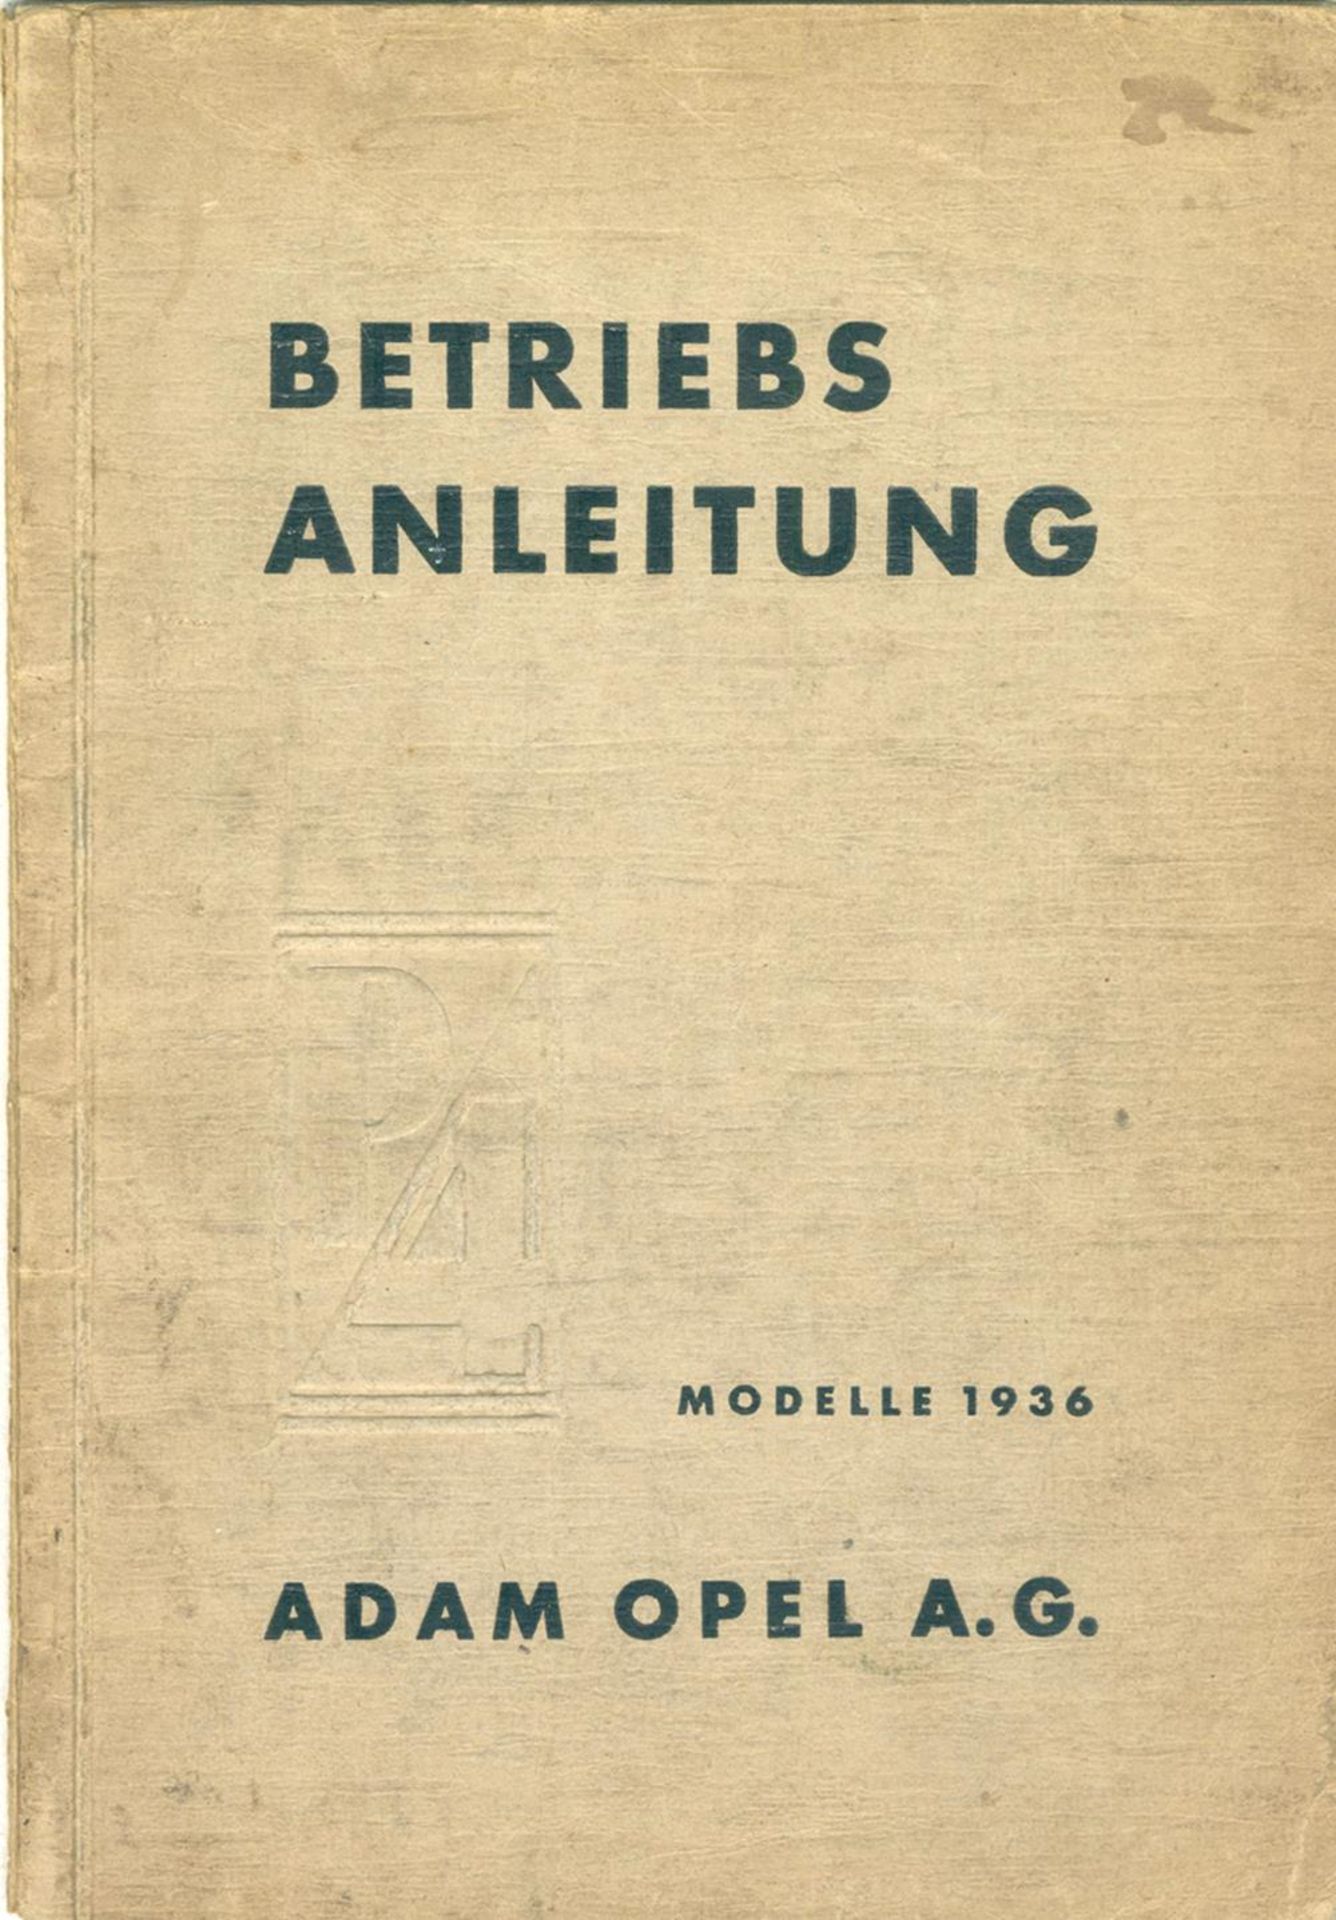 Opel AG.